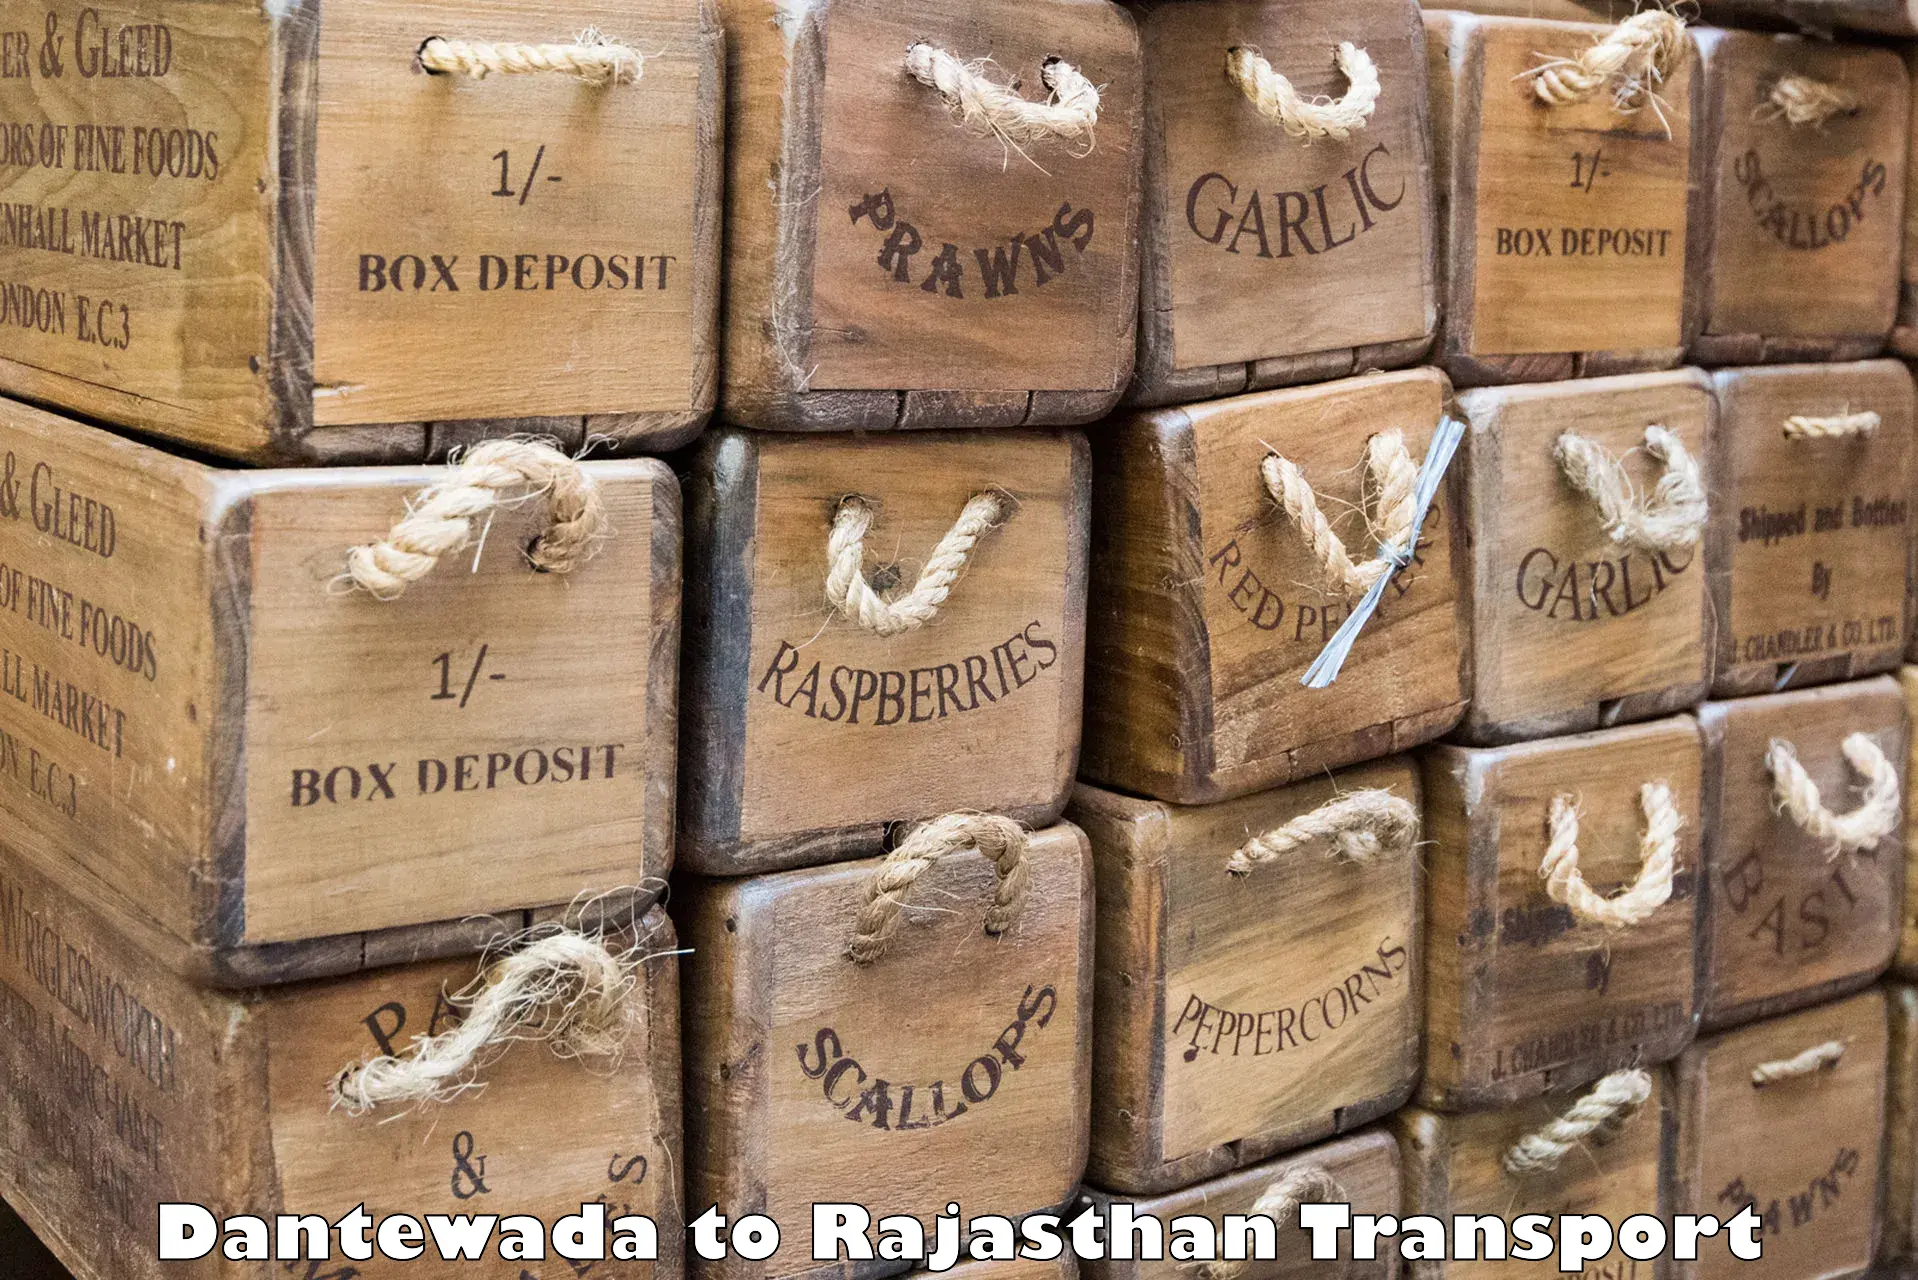 Furniture transport service Dantewada to Bhiwadi